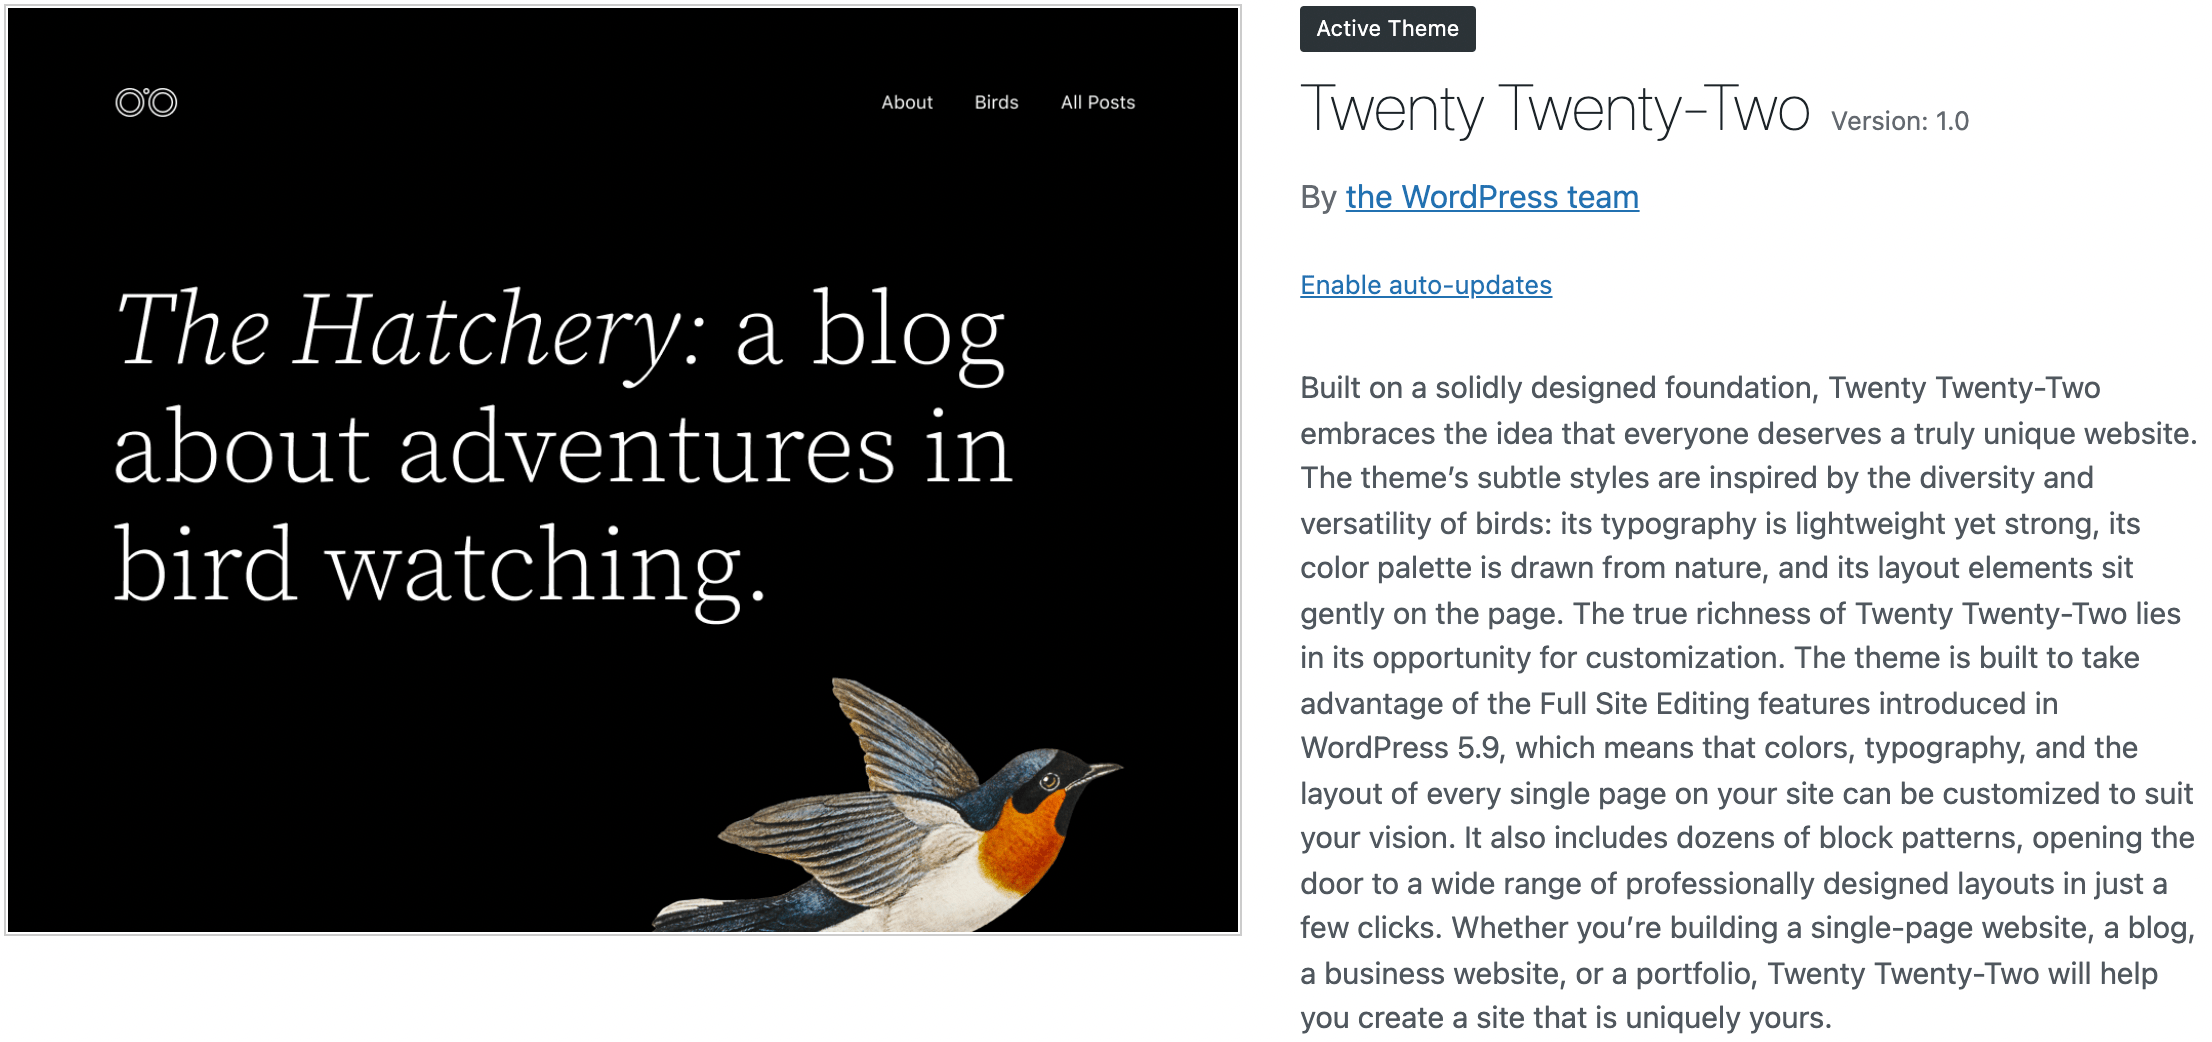 WordPress Twenty Twenty-Two theme.